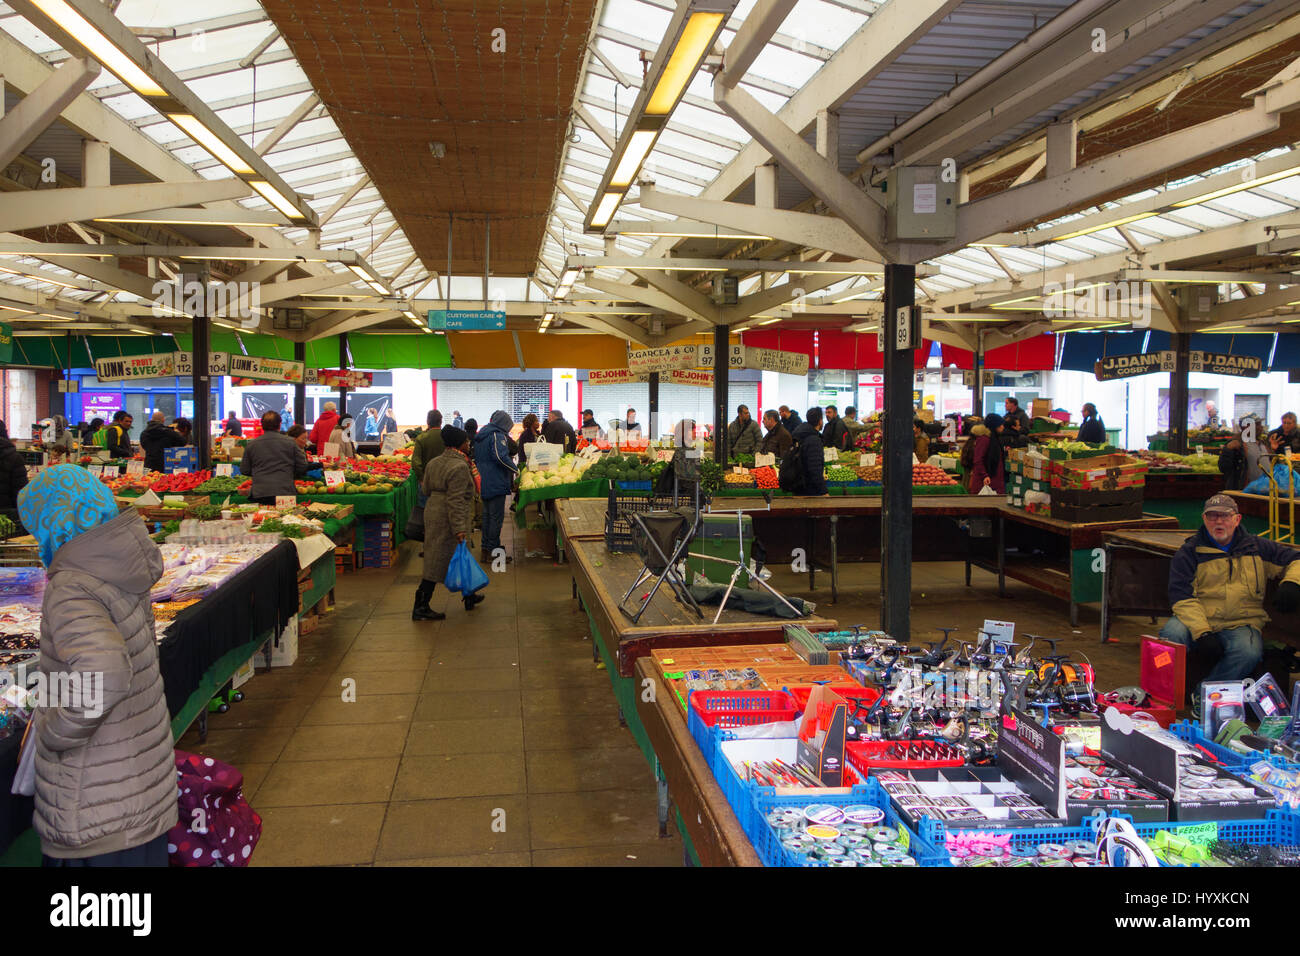 Le centre-ville de Leicestershire entièrement du marché d'émission. Marchandises : fruits et légumes, des articles de pêche et de bijoux. Banque D'Images